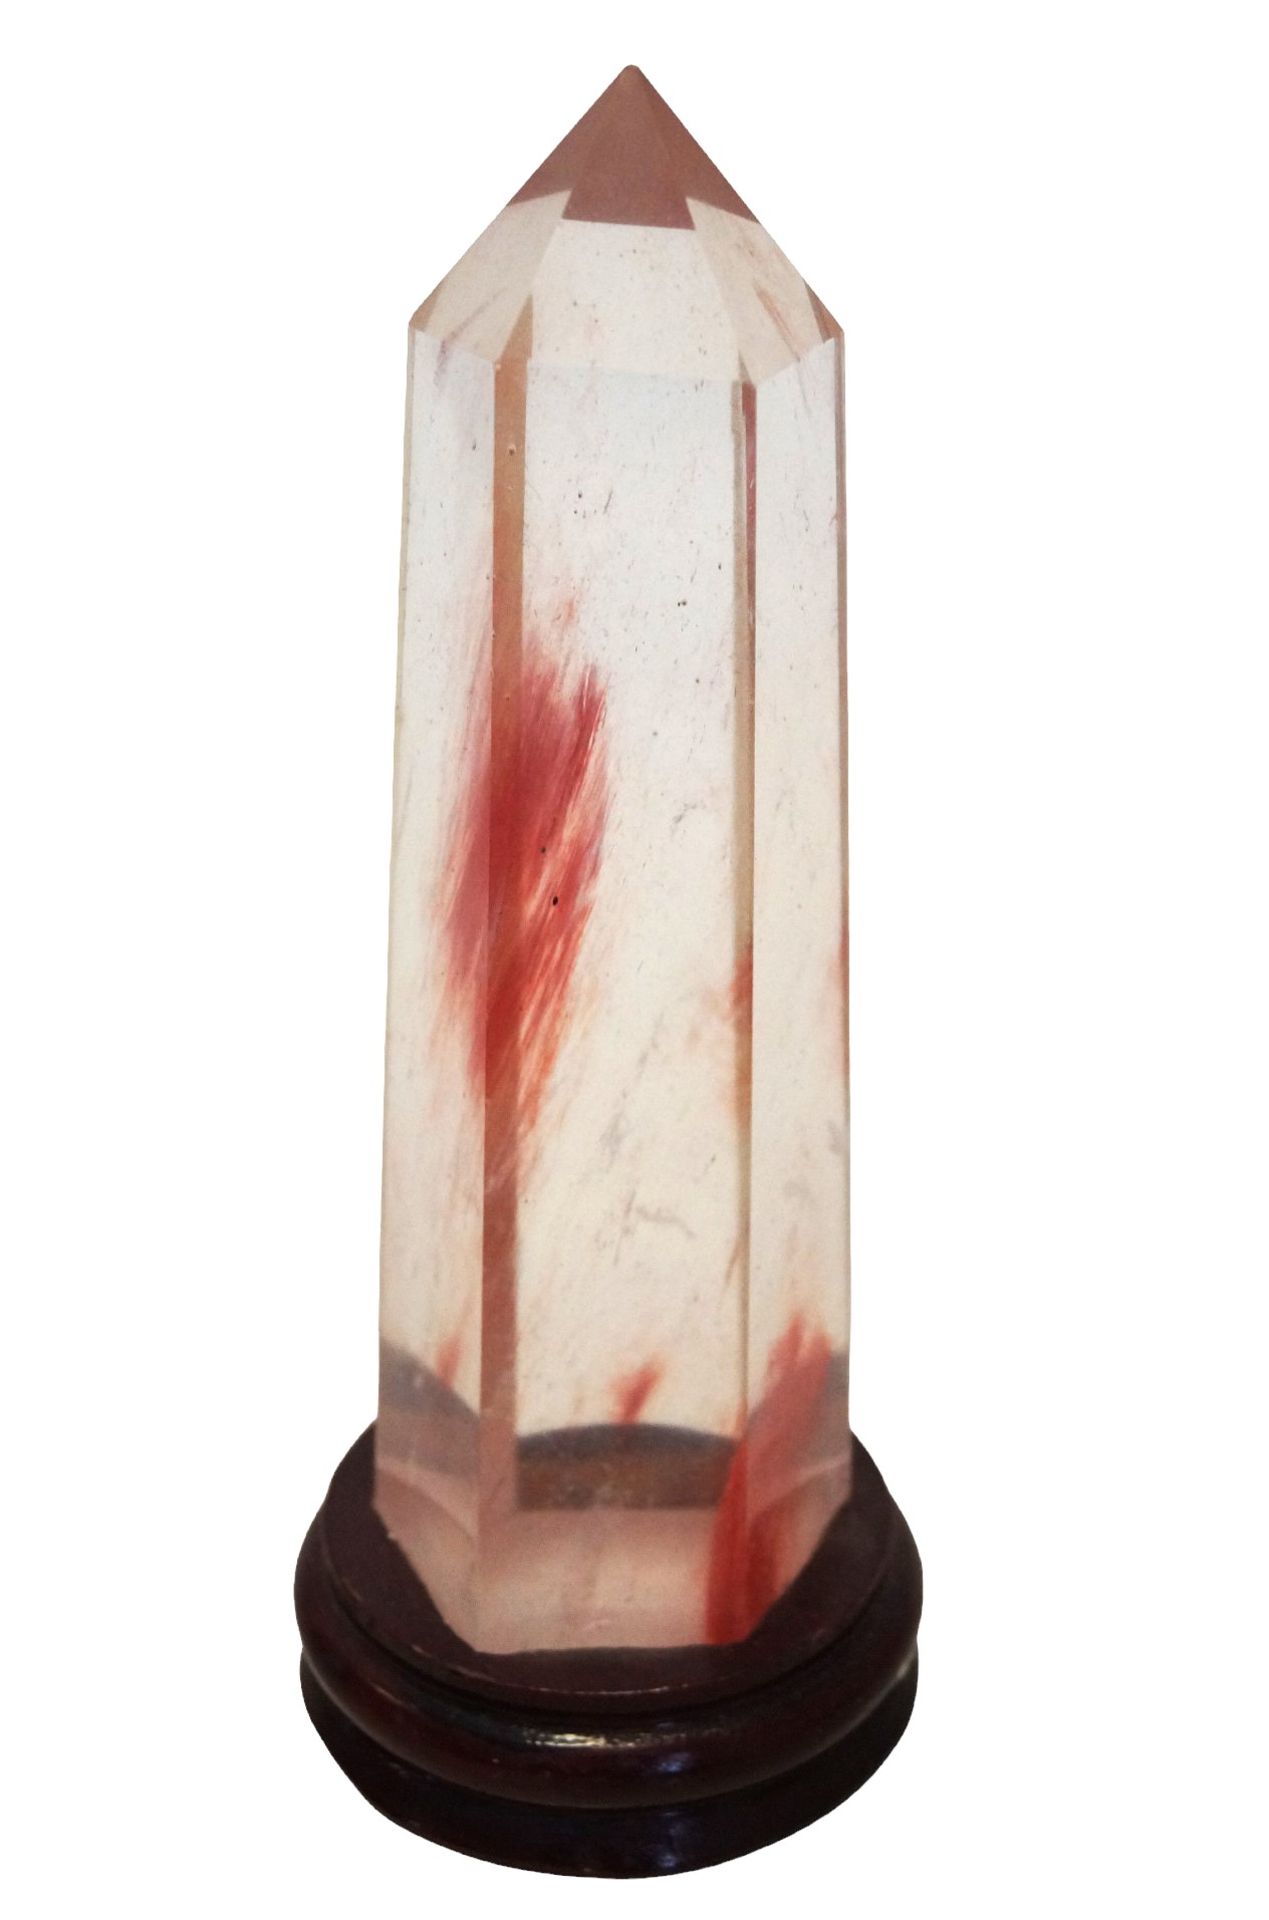 6-kantige, als Kristall geschliffene Glassäule mit leichten roten Schlieren als Einschluss; auf Hol - Bild 2 aus 2